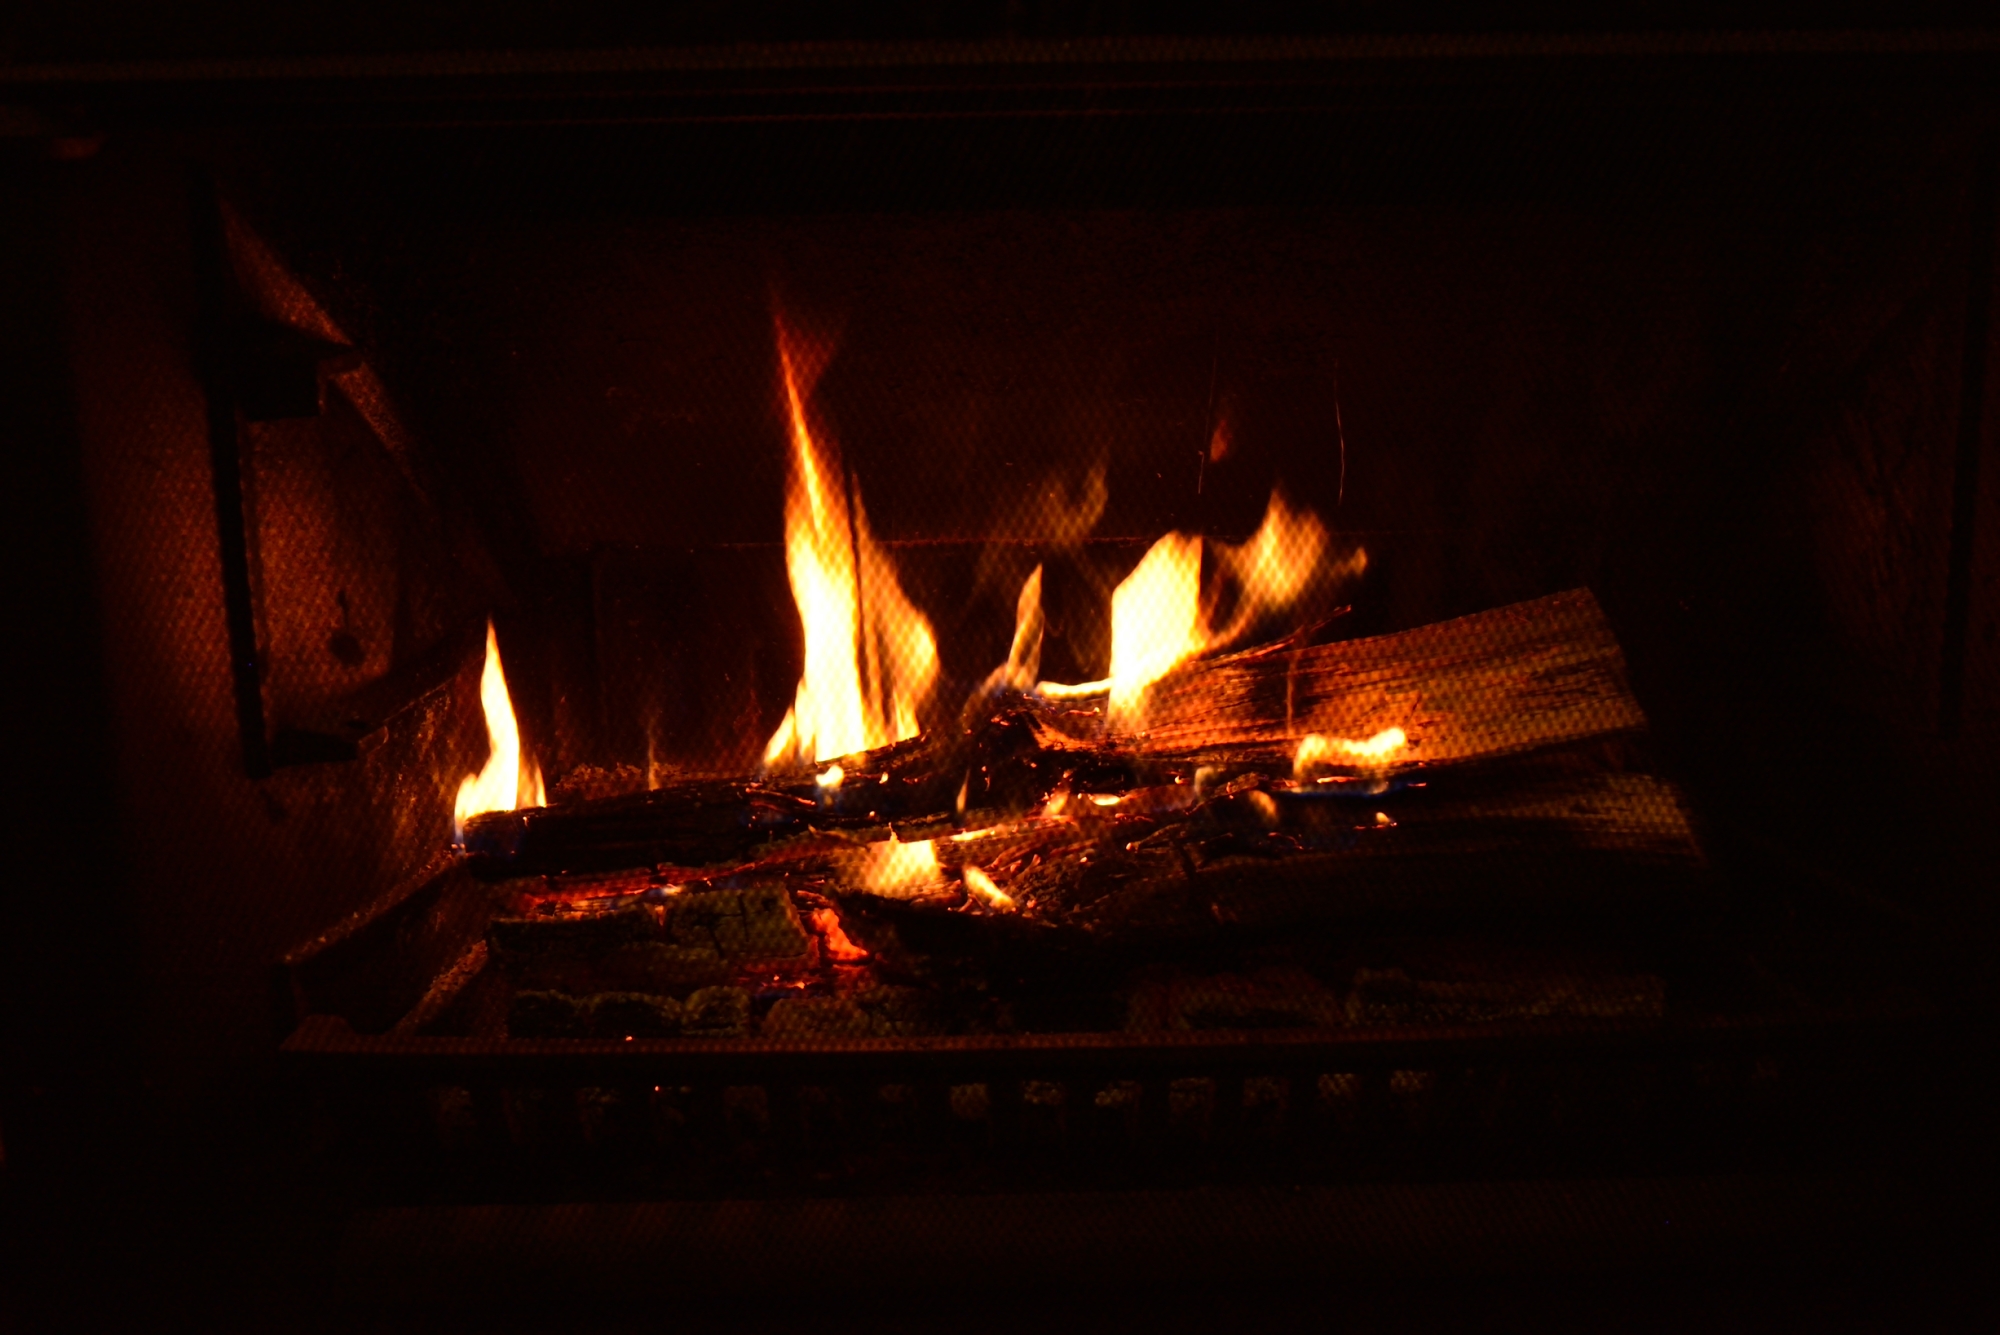 Fire in winter